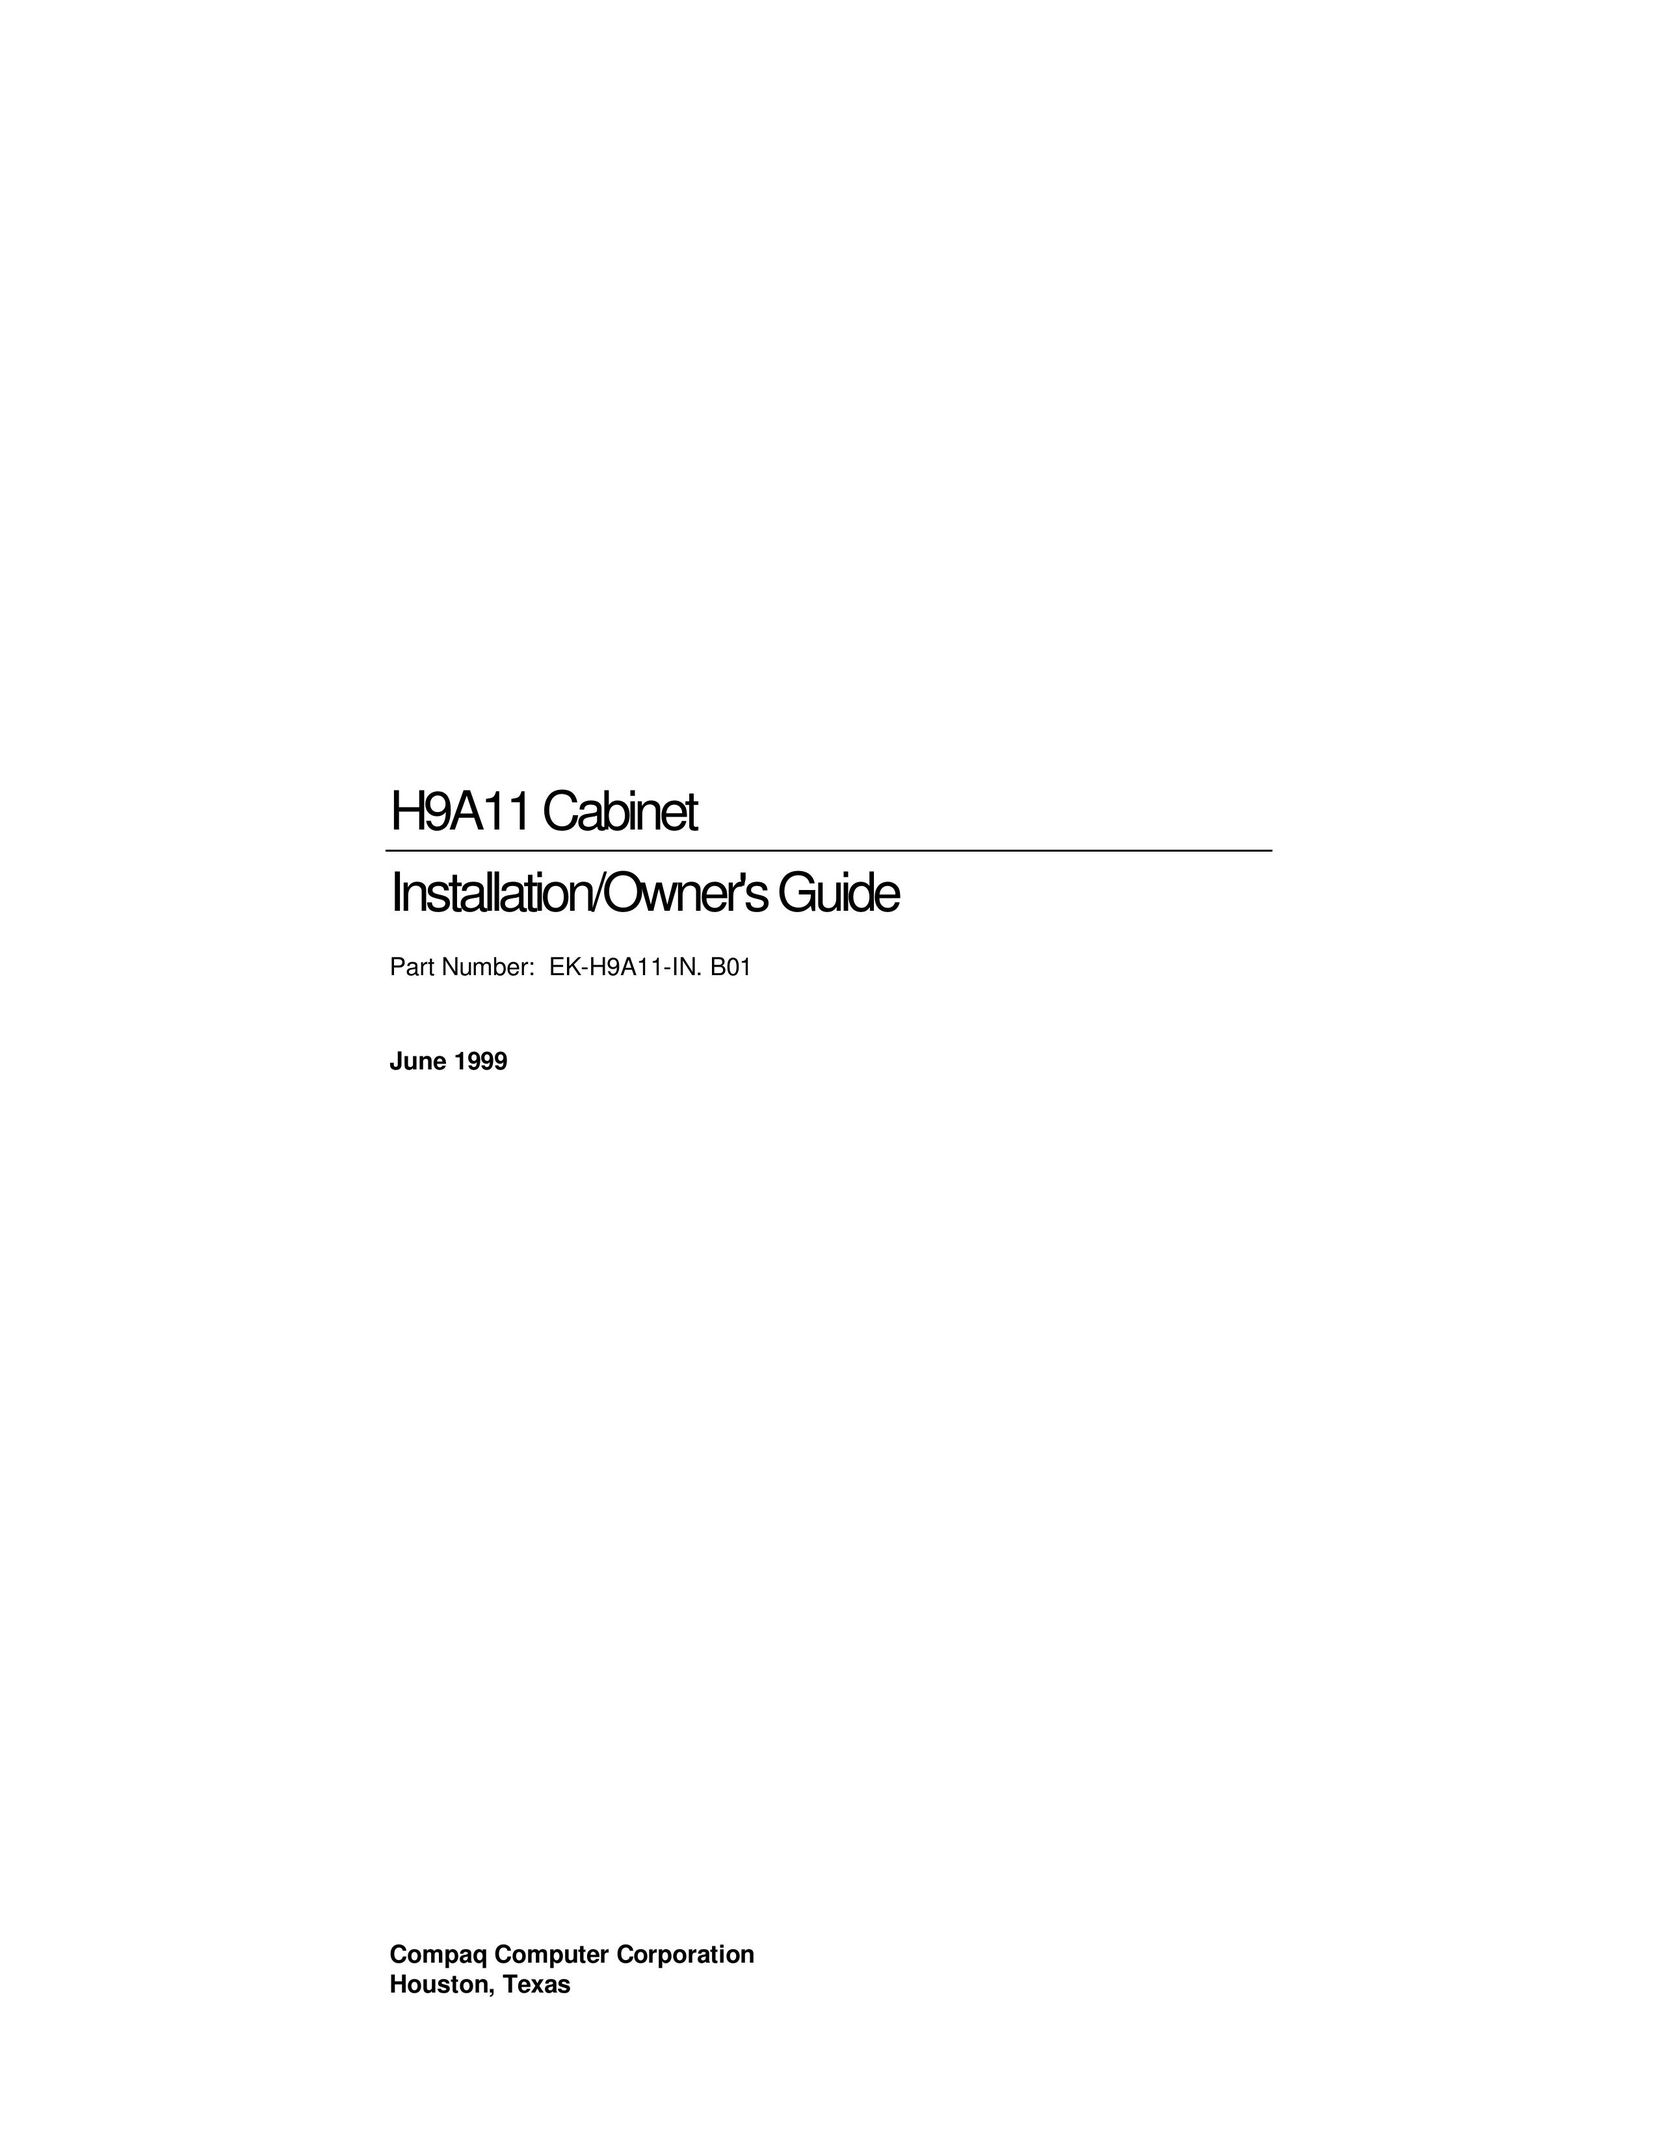 Compaq H9A11 Network Card User Manual